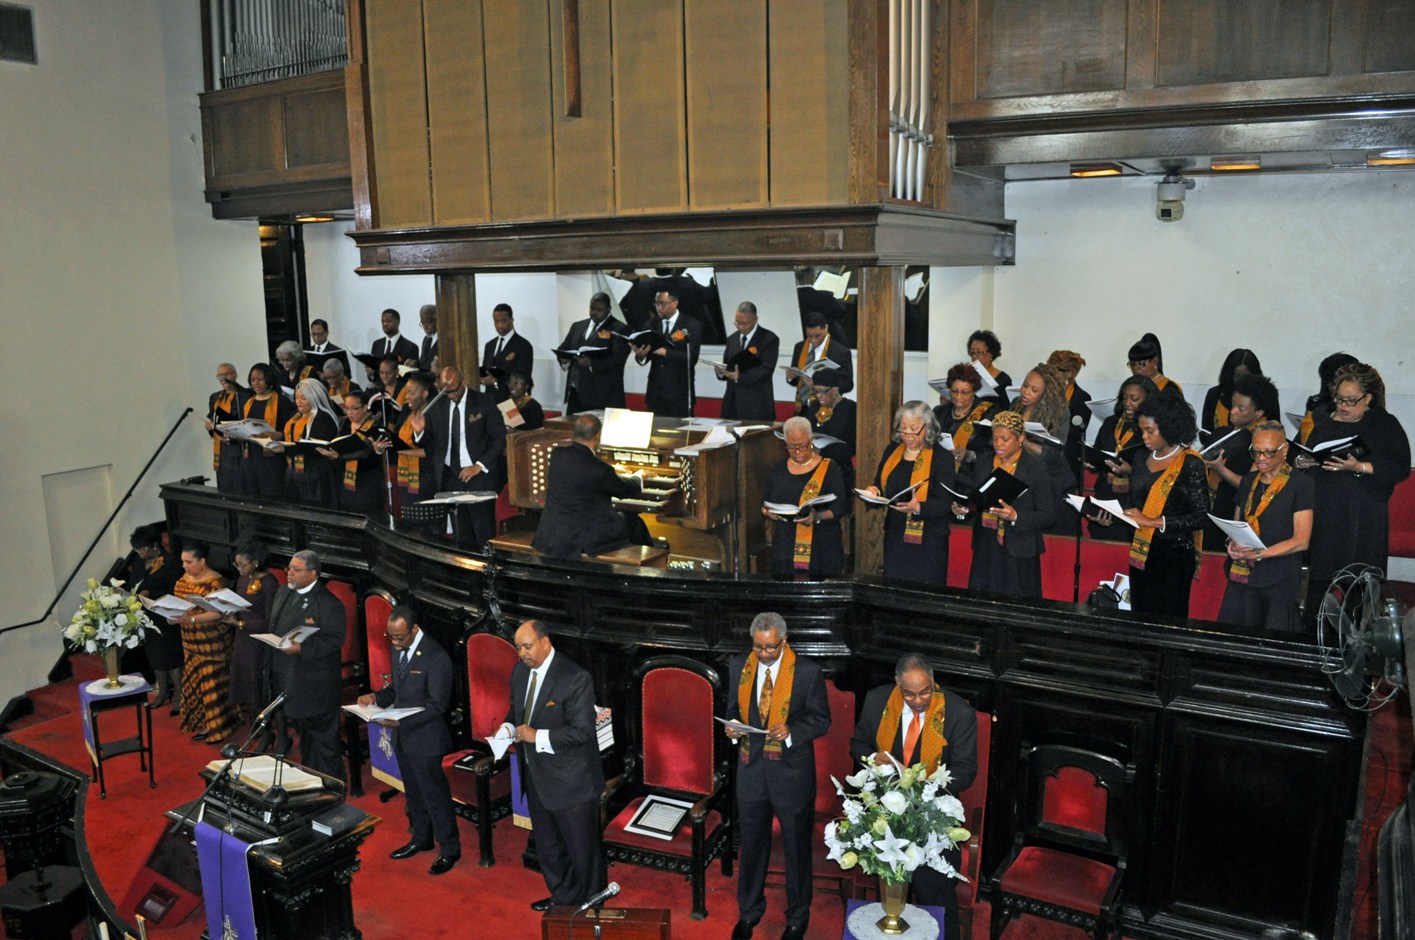 250th Church Anniversary